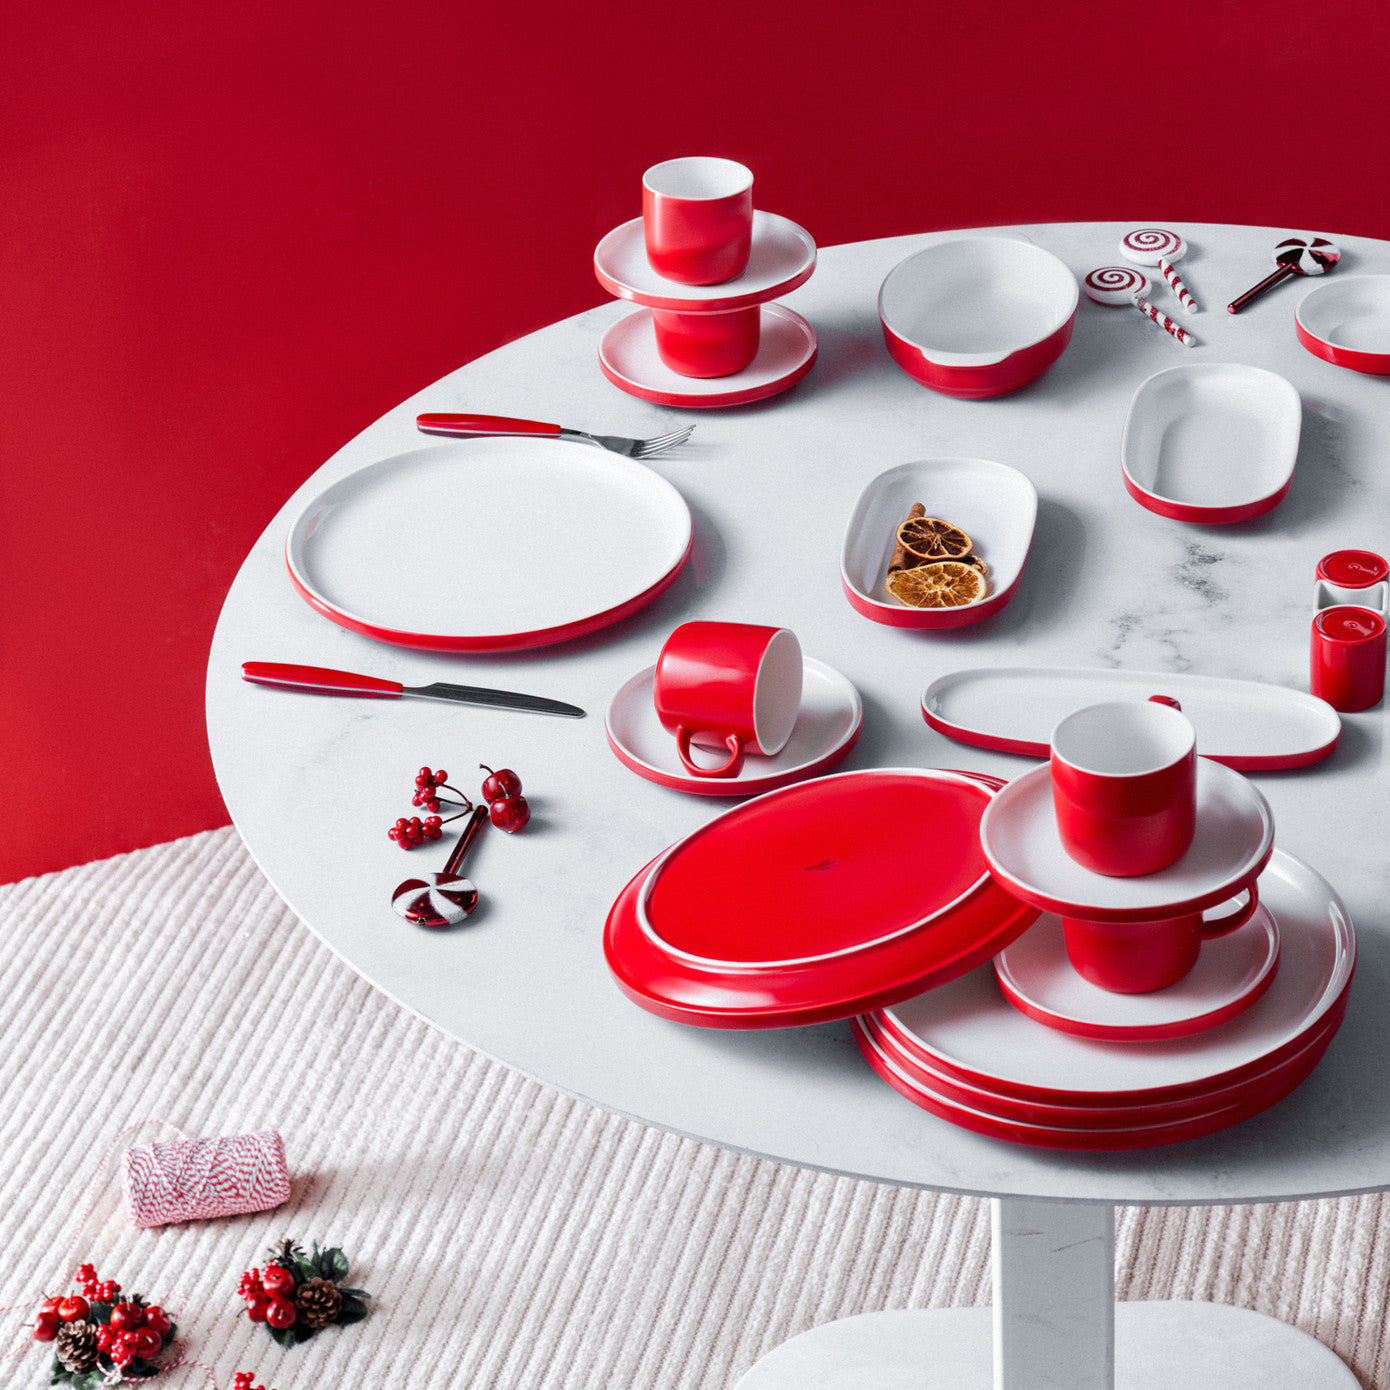 Karaca Nordic Red Set de mic dejun de 24 de piese pentru 6 persoane